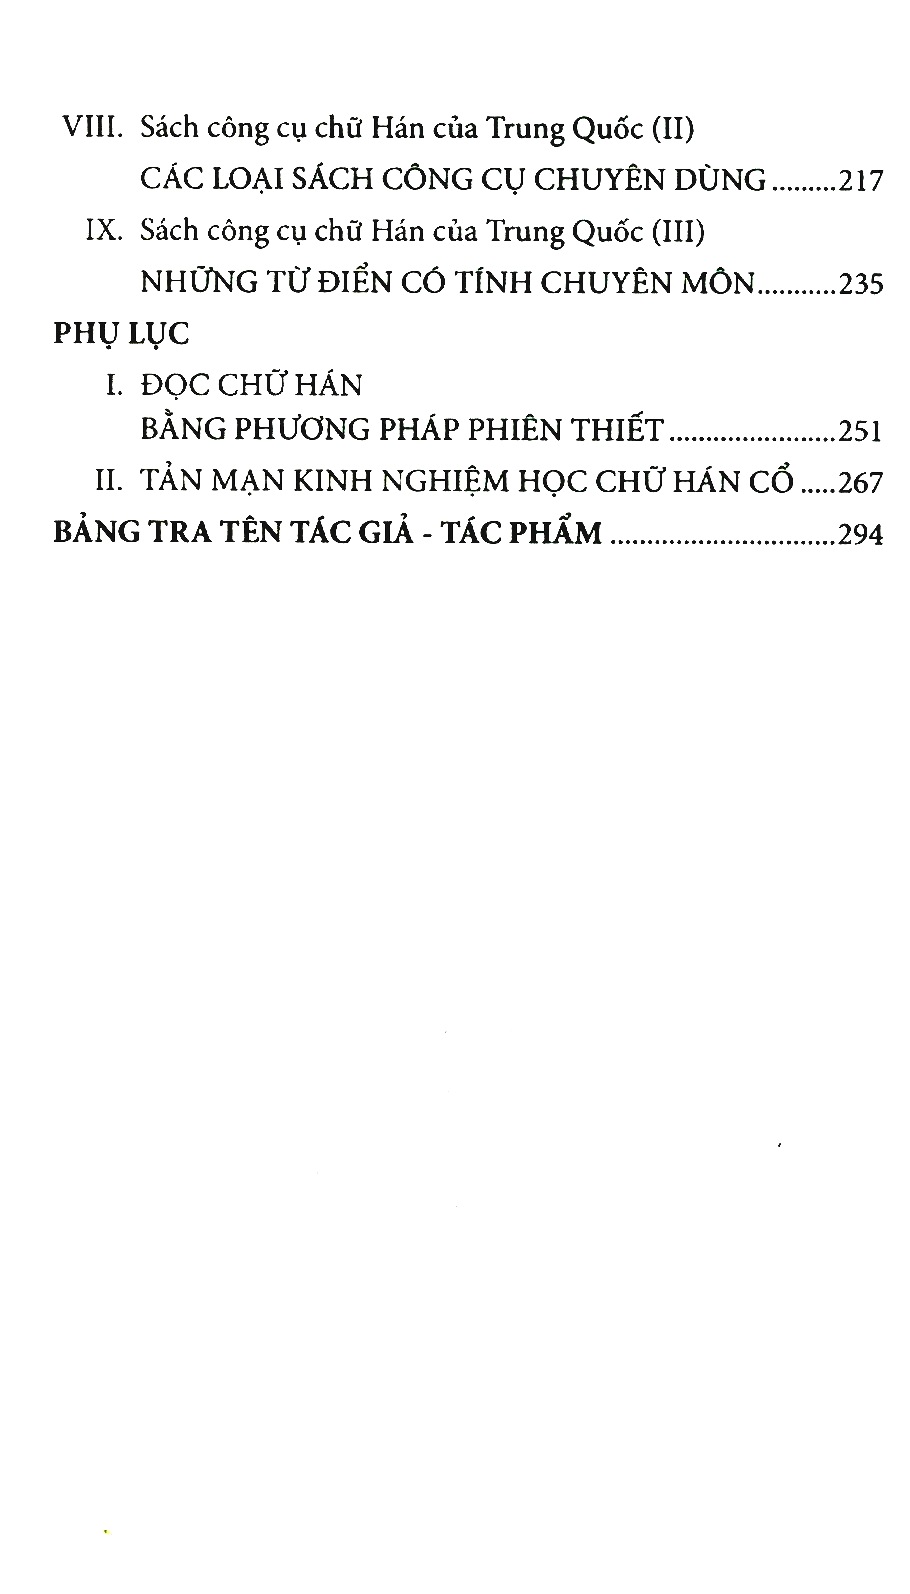 Từ điển - Sách công cụ chữ Hán của Việt Nam và Trung Quốc